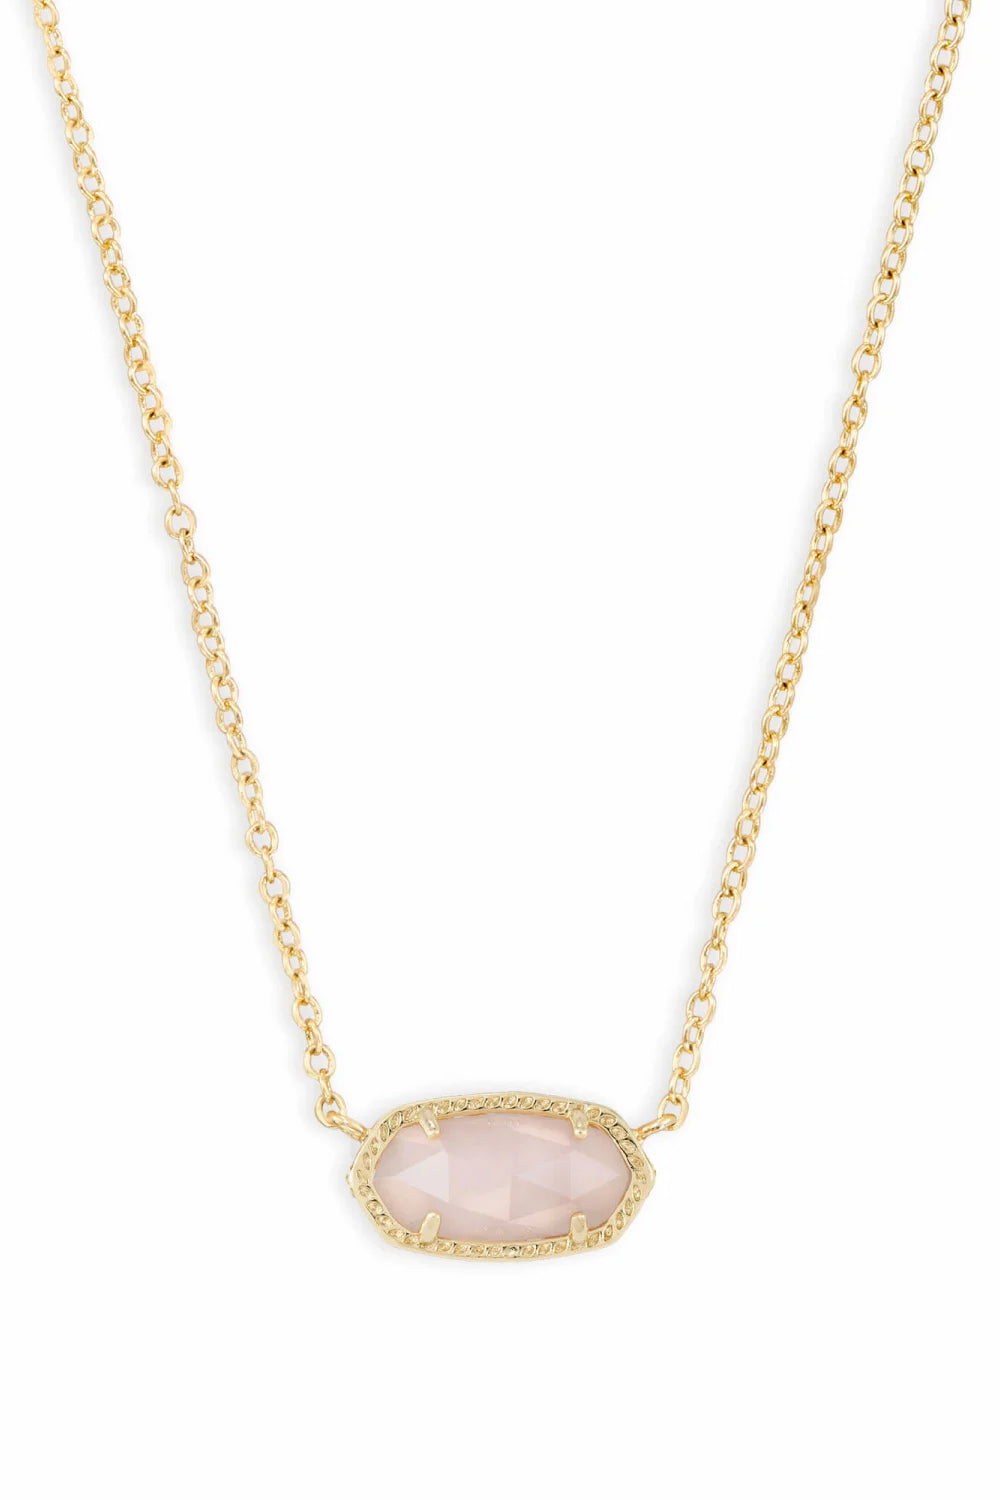 Kendra Scott: Elisa Gold Short Pendant Necklace - Rose Quartz | Makk Fashions